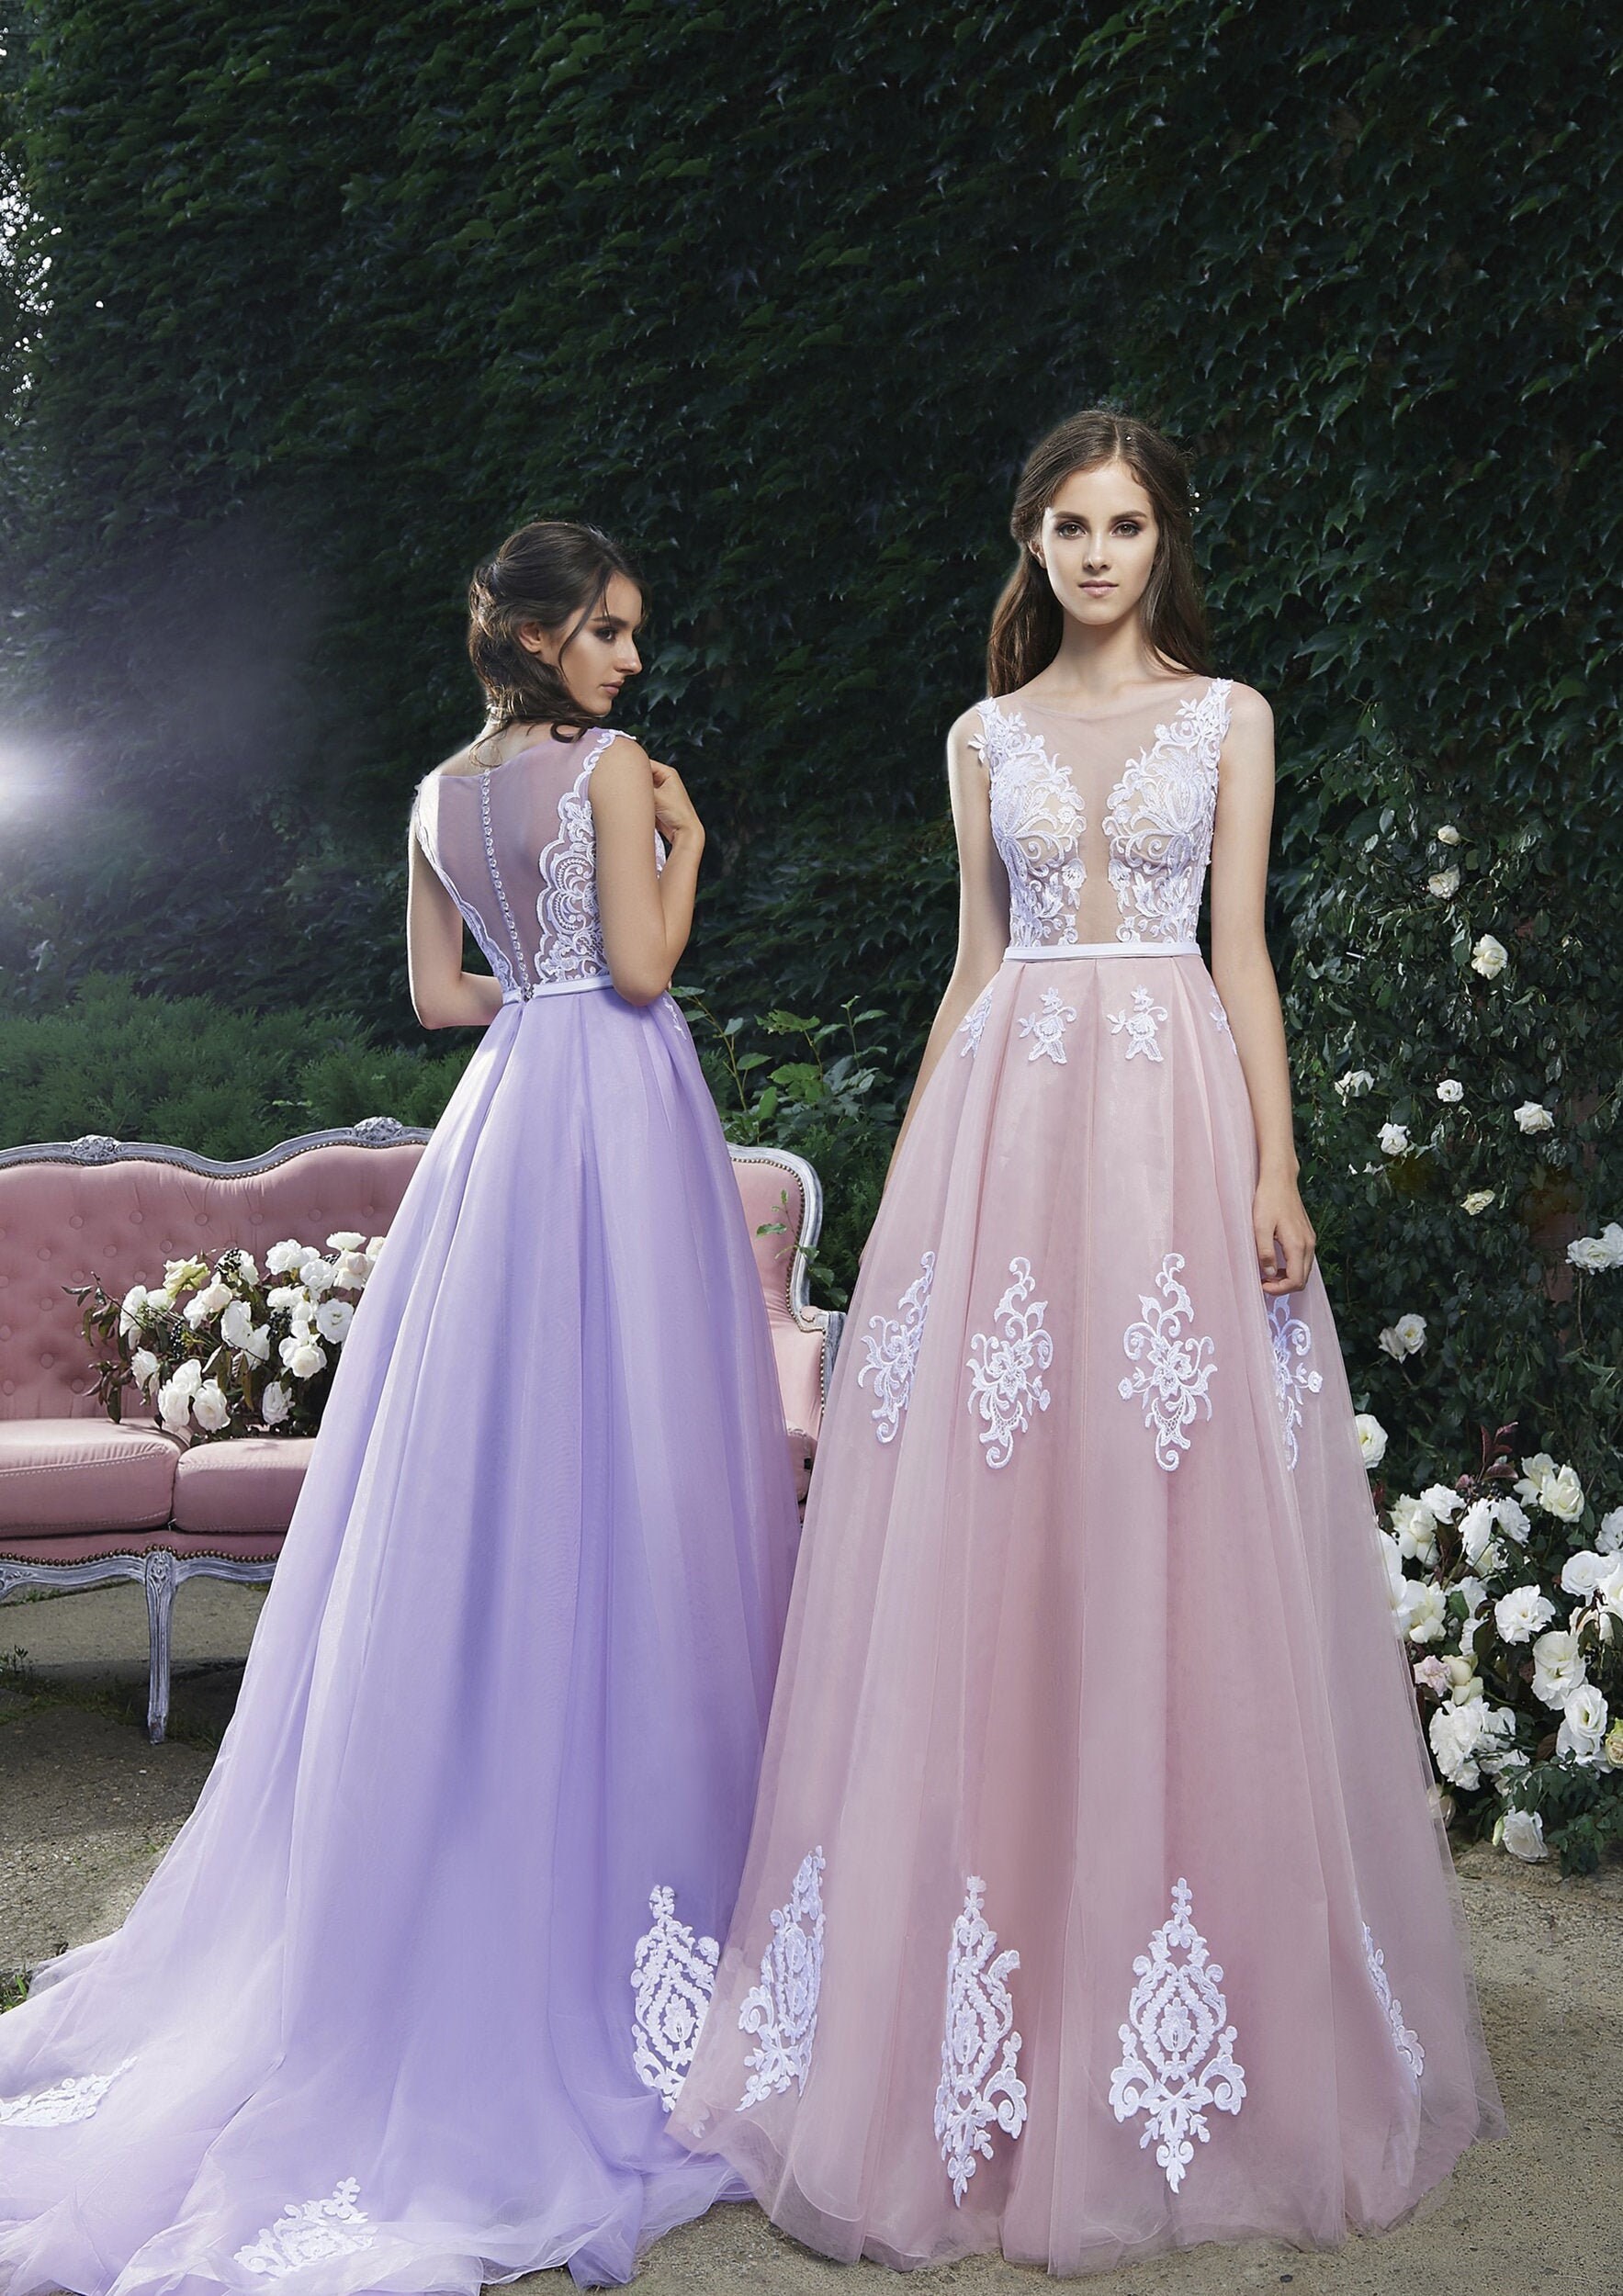 Lavender Dress Lace Dress Pastel Color Dress Evening Dress - Etsy